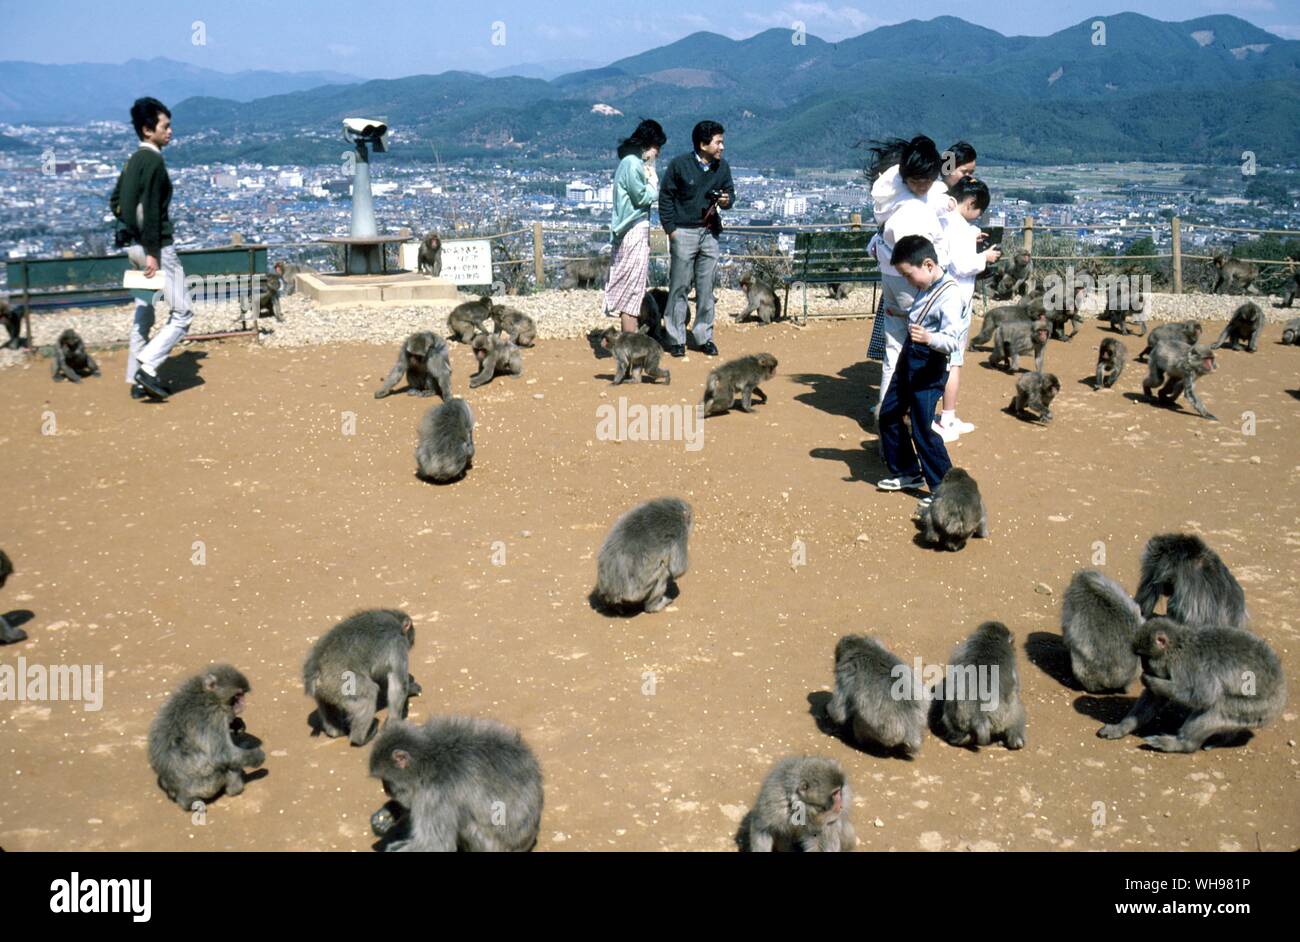 Parc du singe Arashiyama, Kyoto donnant sur l'un des trente parcs singe macaque le flux touristique Banque D'Images